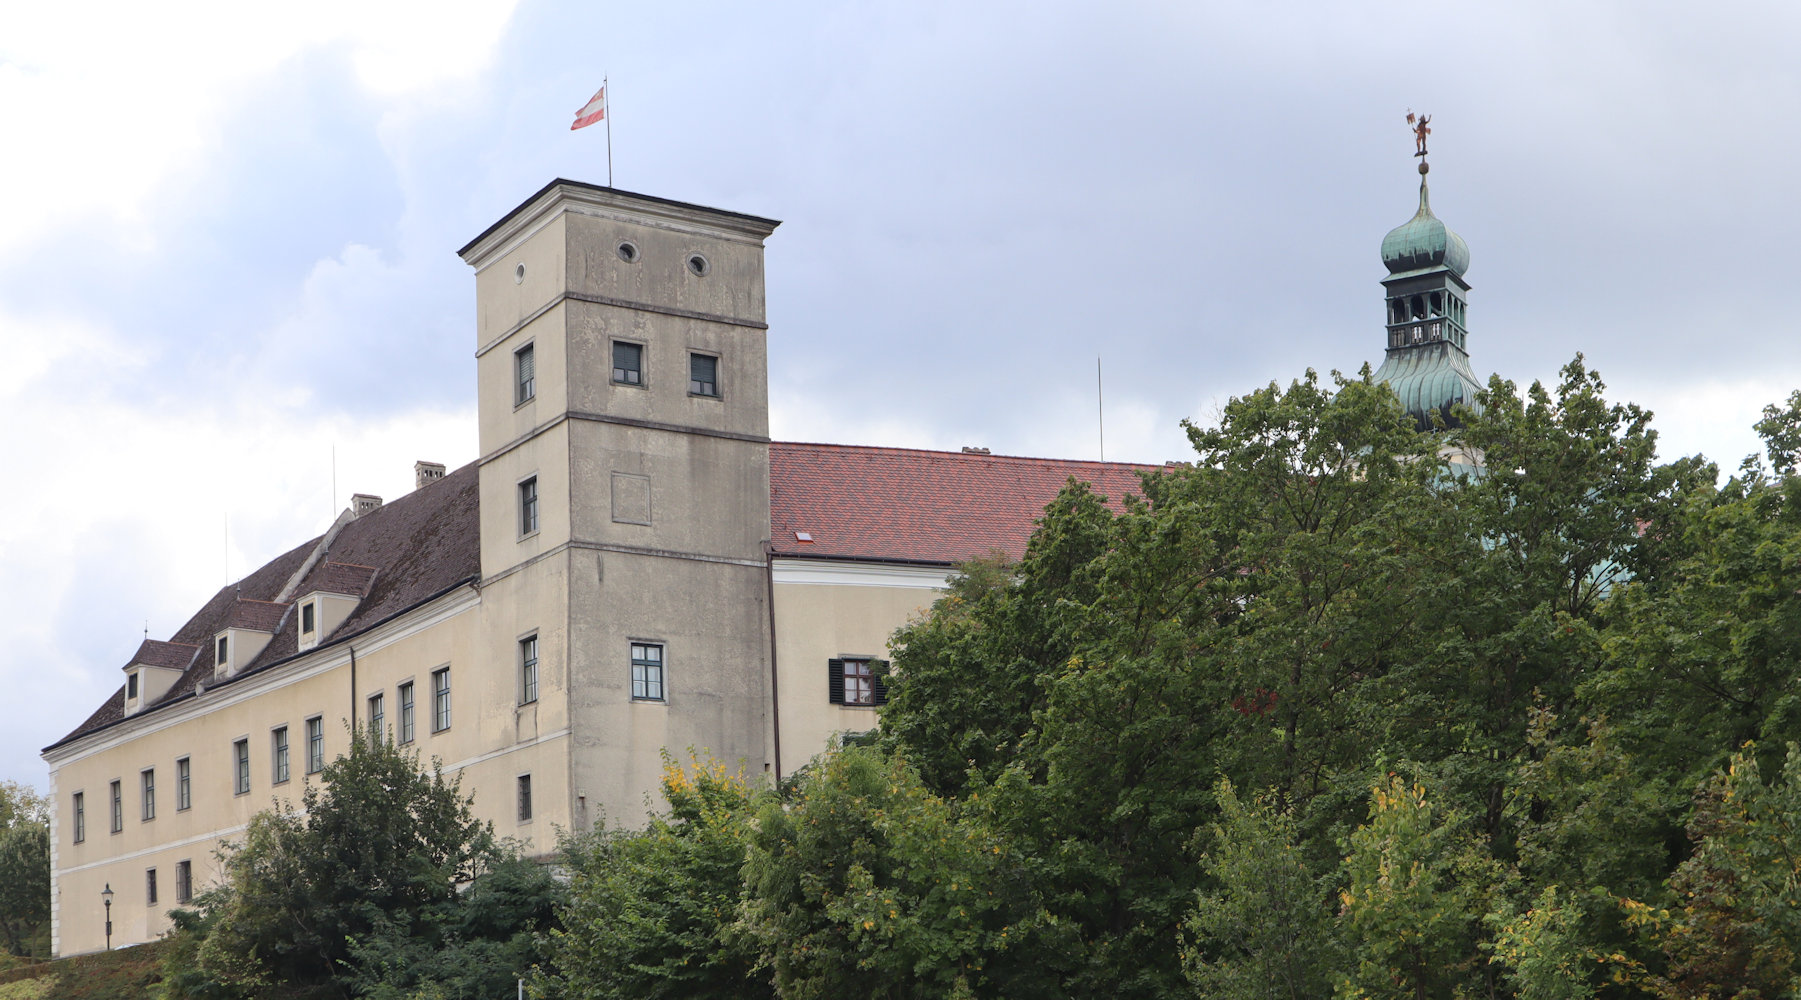 Schloss Persenbeug